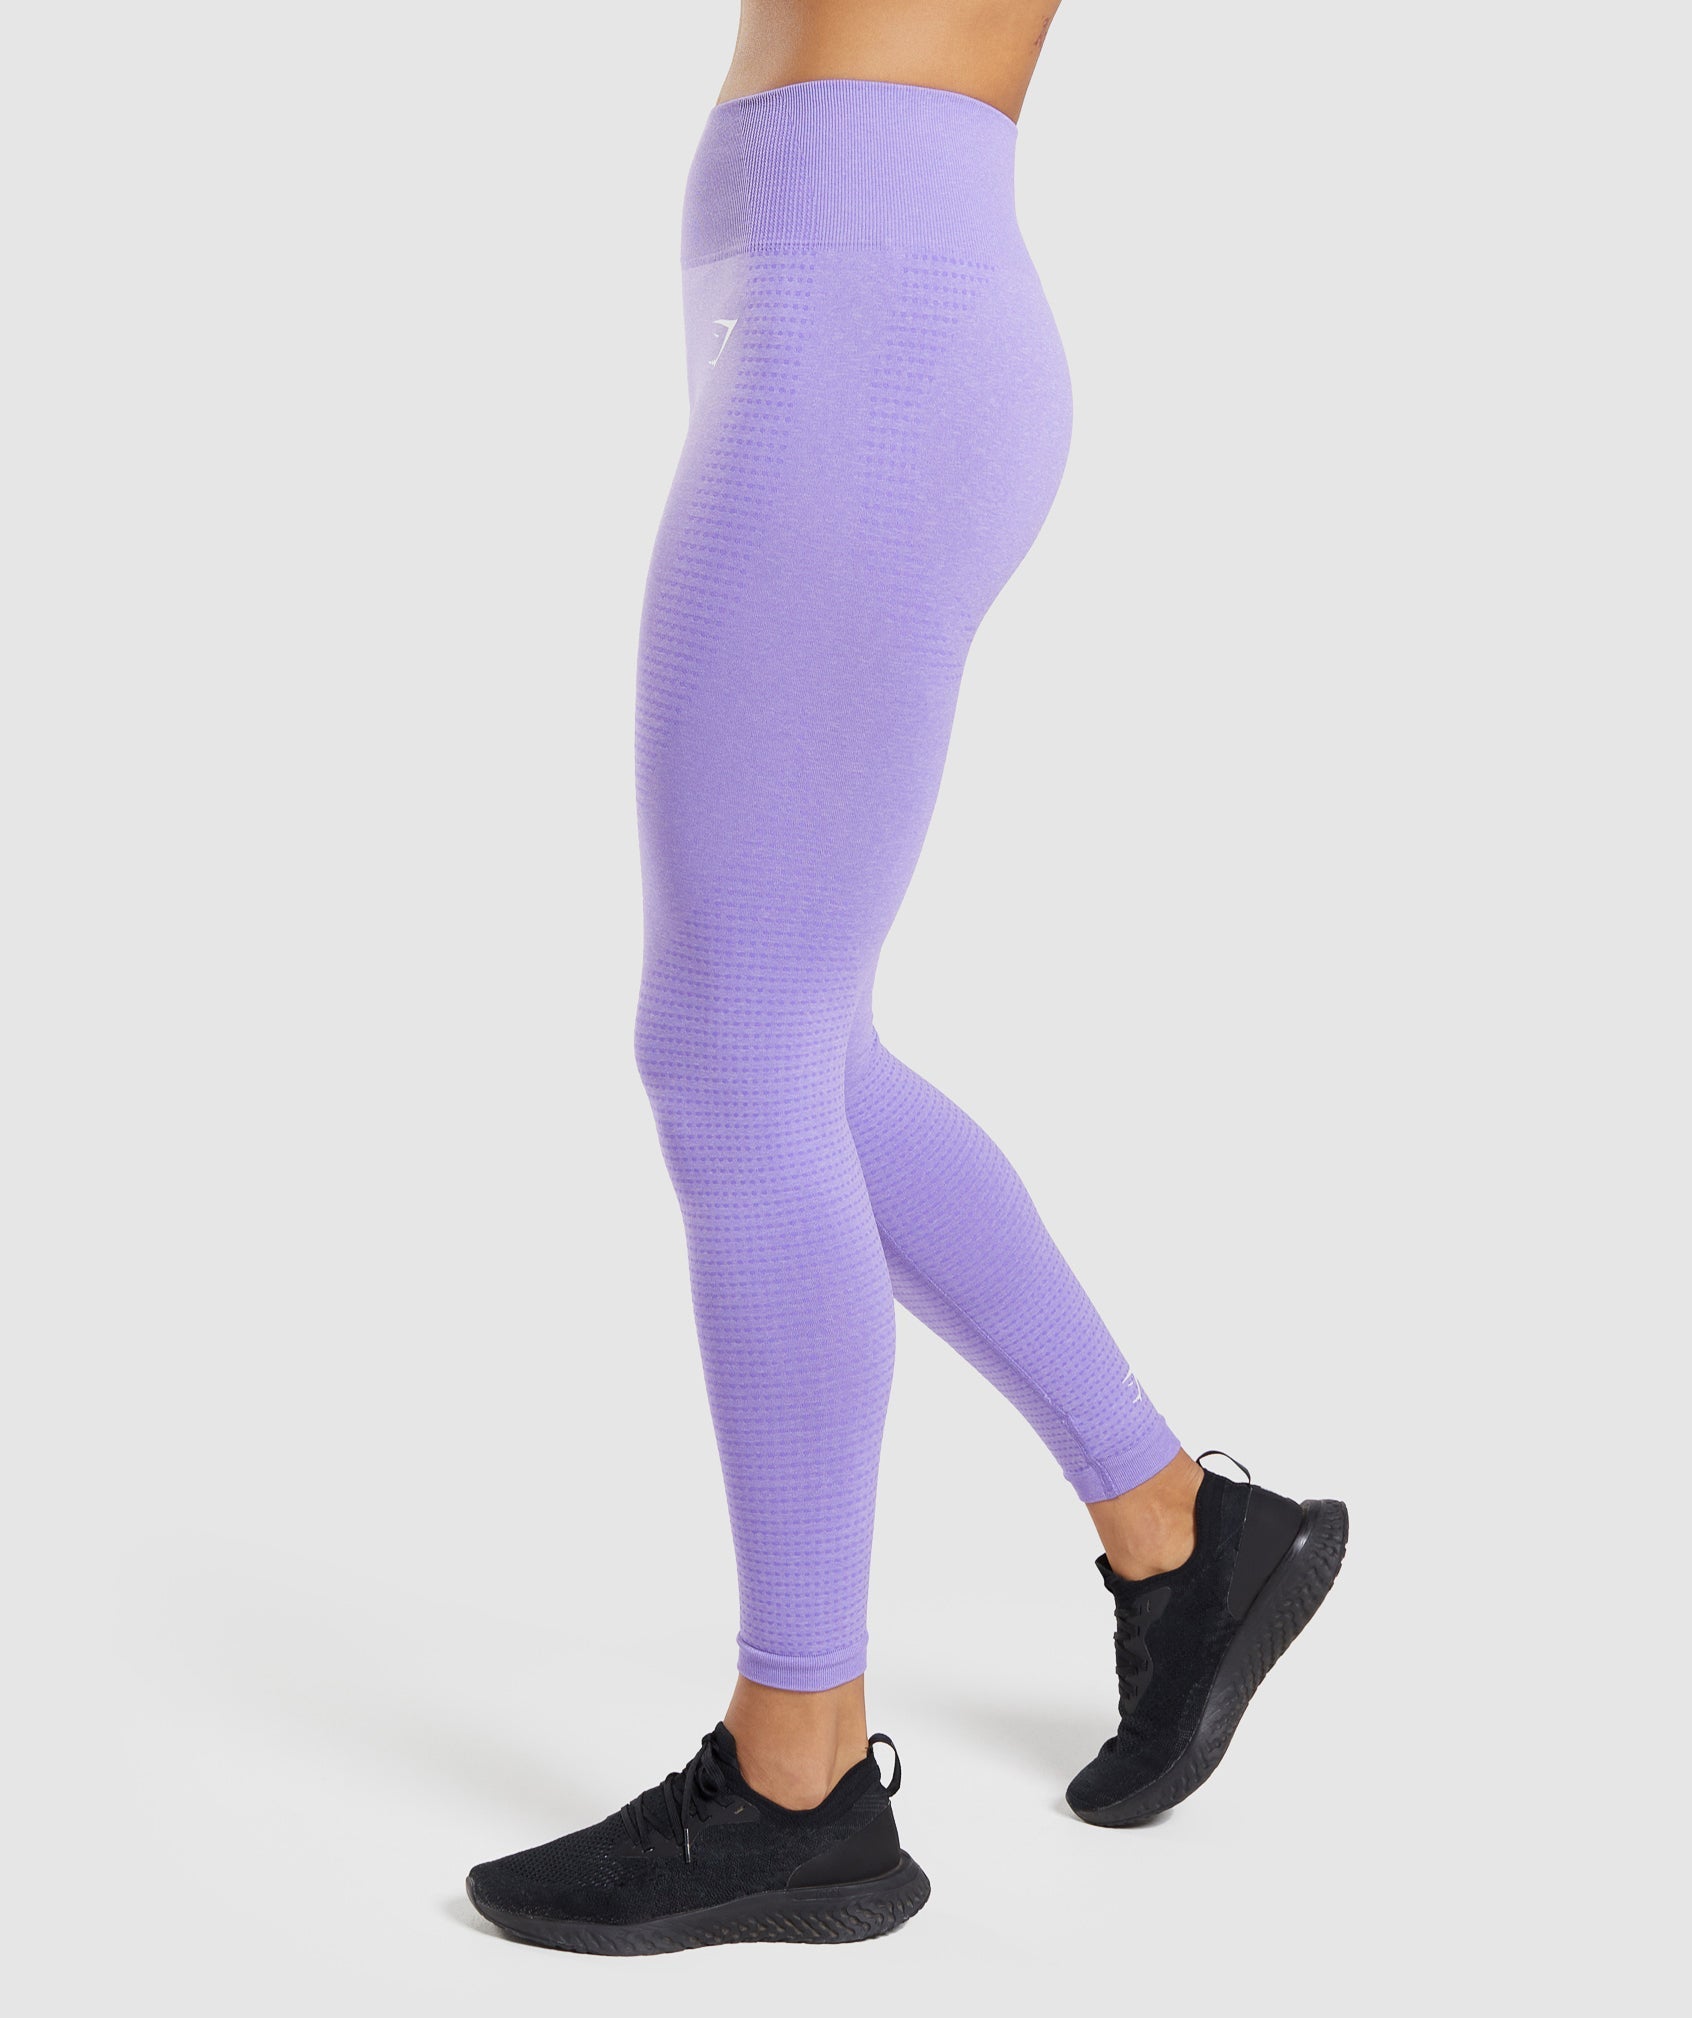 Inspire Leggings V2- Purple